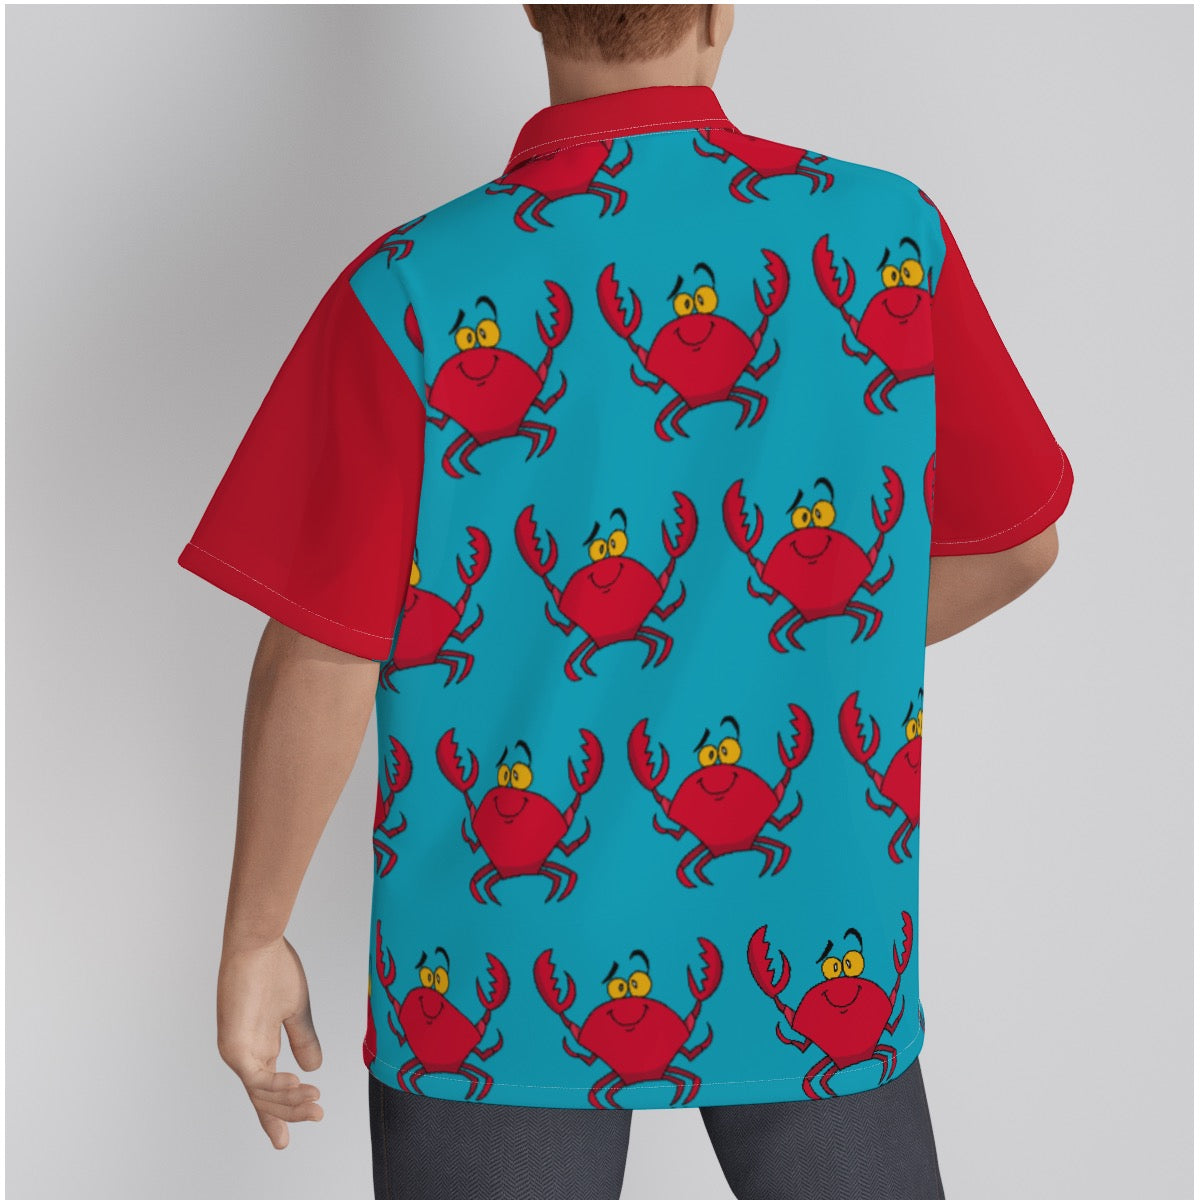 Feeling' Crabby Camp Hawaiian shirt